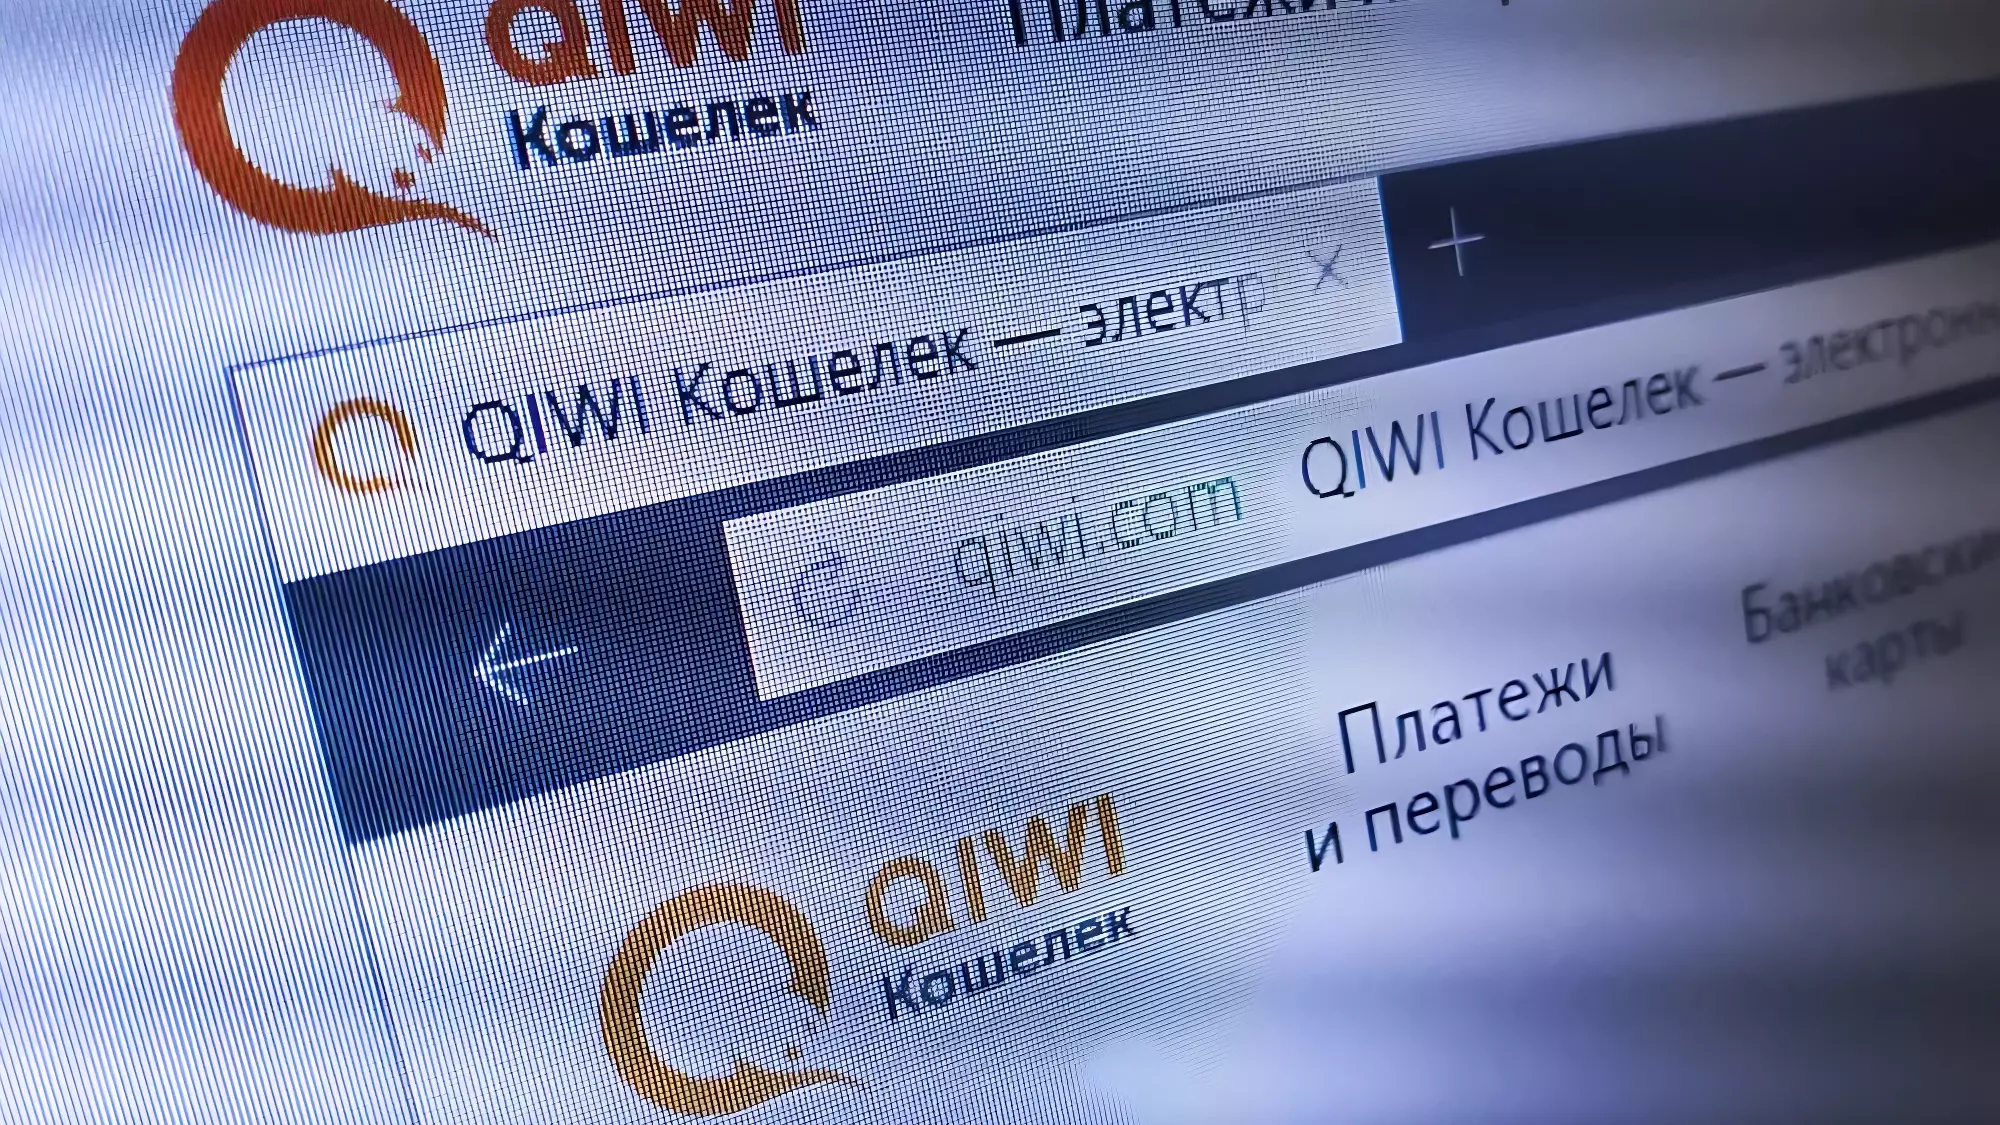 Владельцы Qiwi-кошельков вернут деньги онлайн